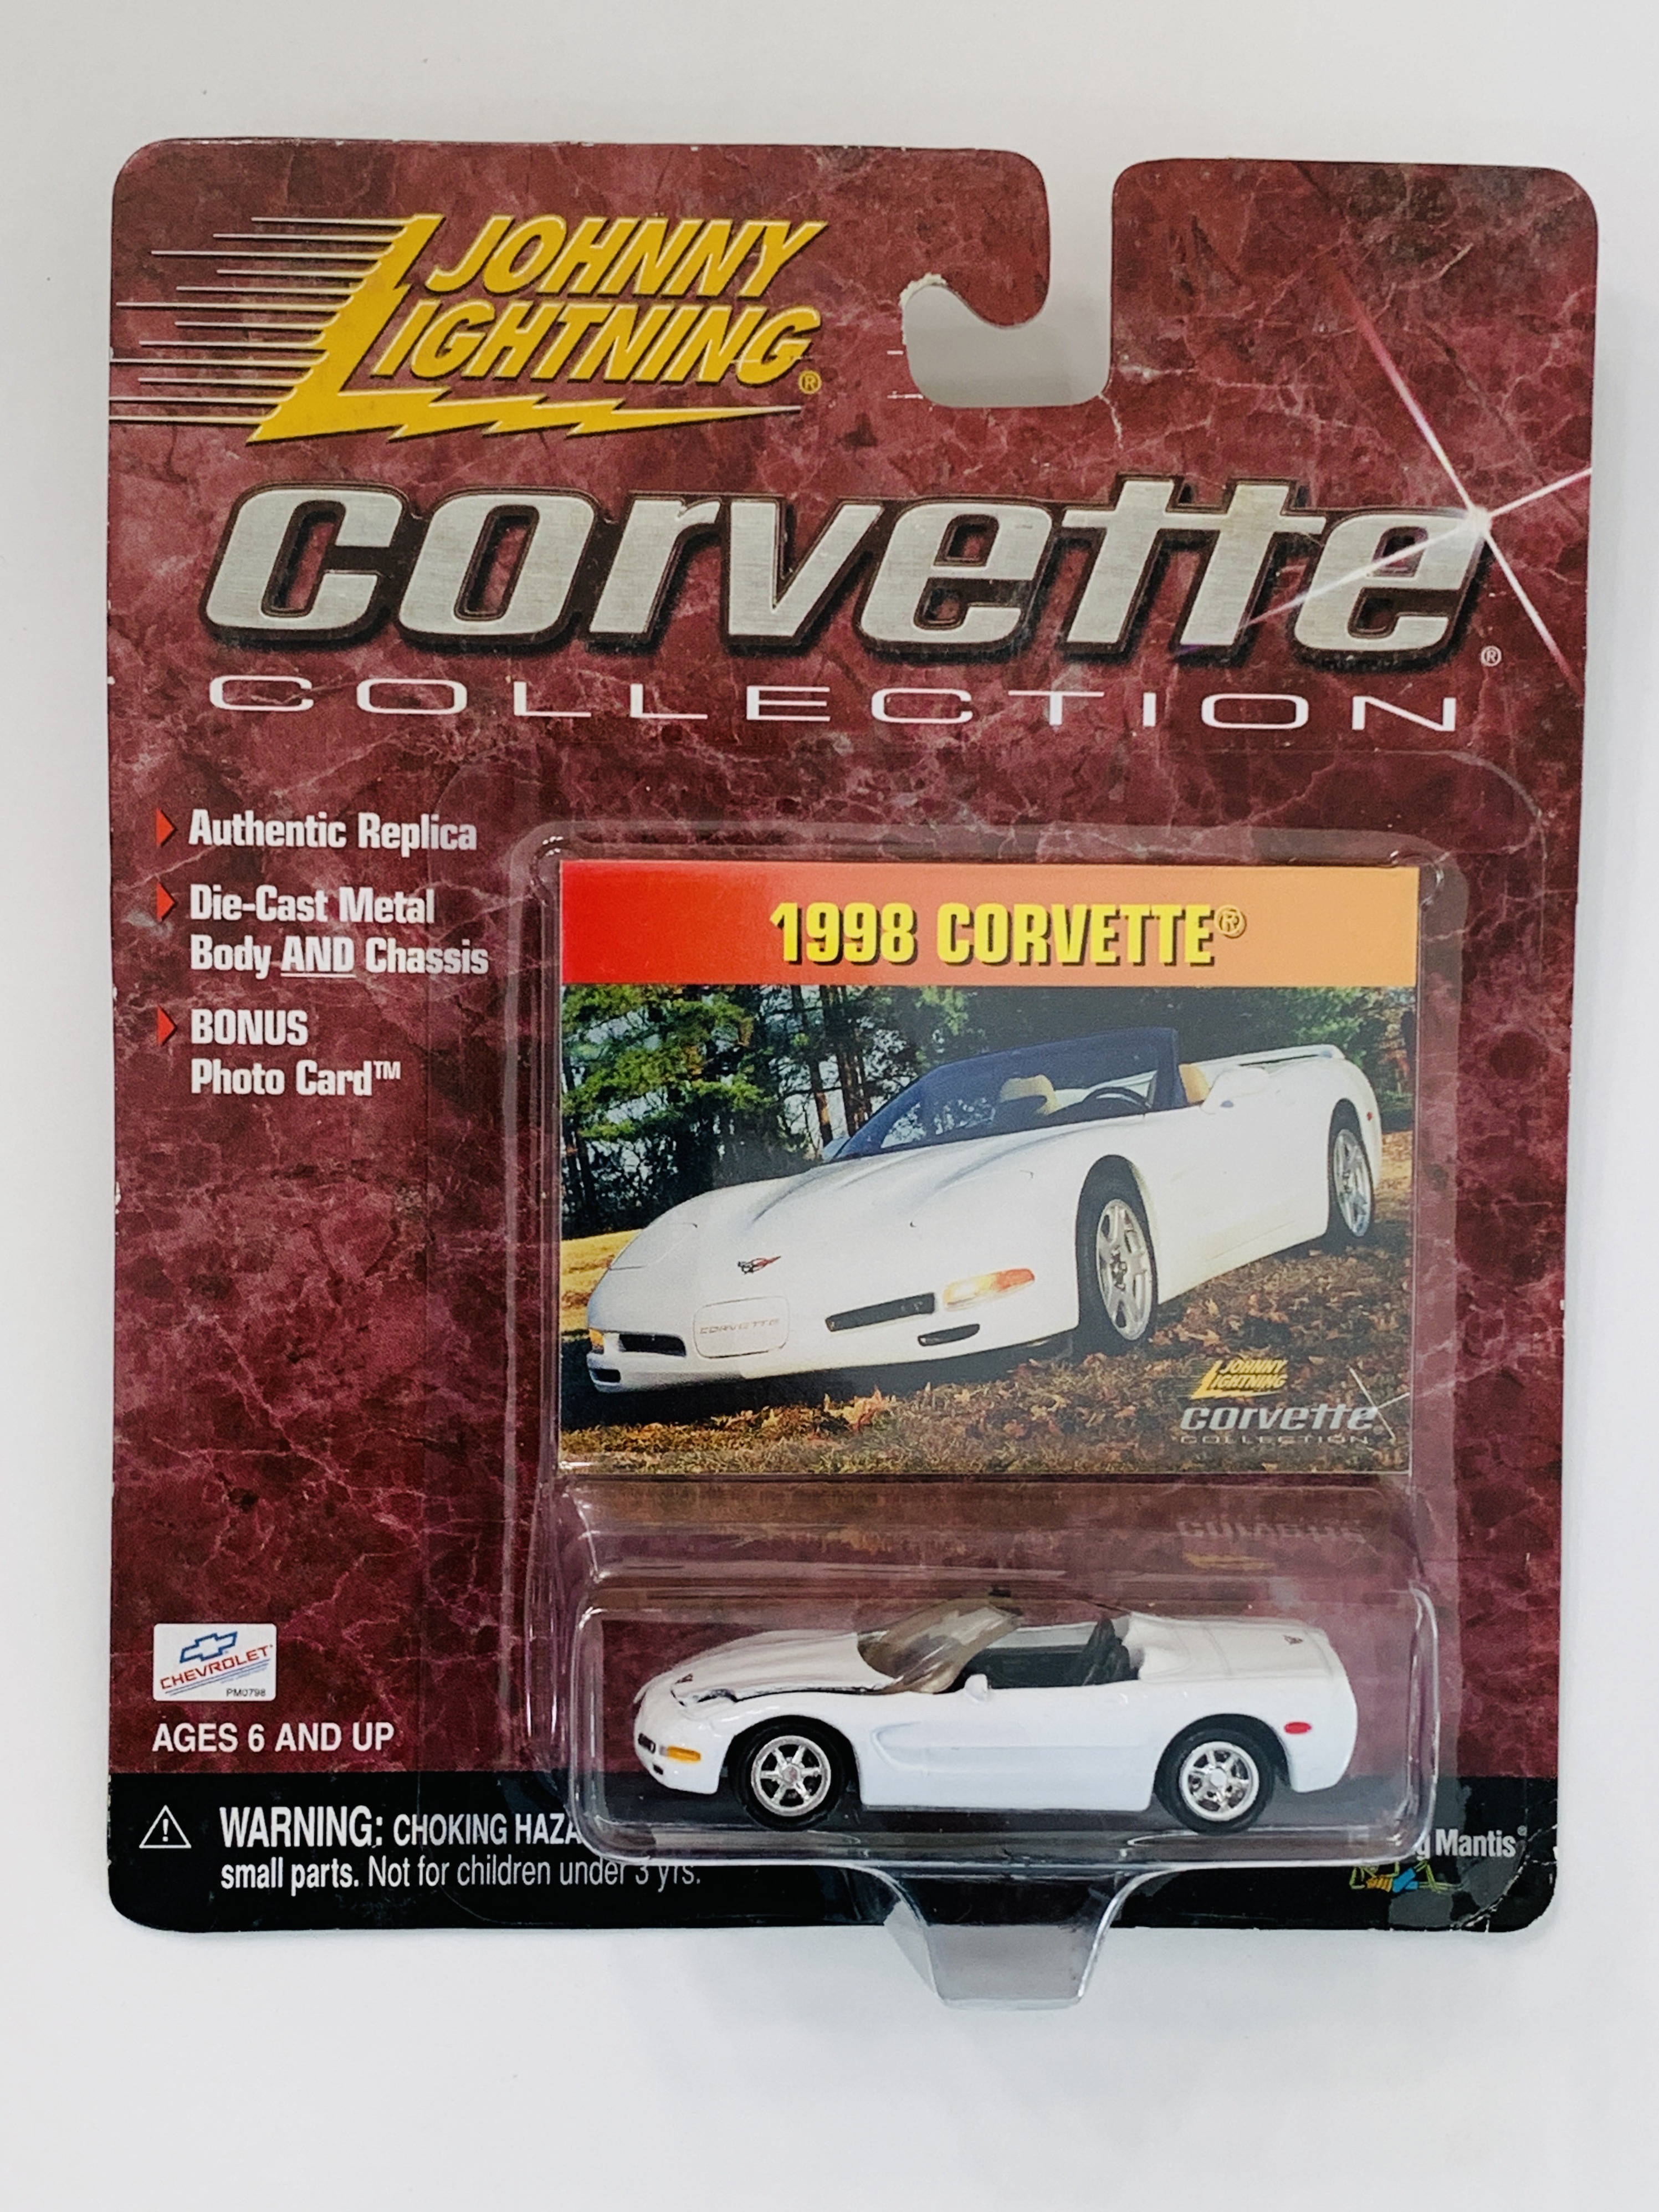 Johnny Lightning Corvette Collection 1998 Corvette